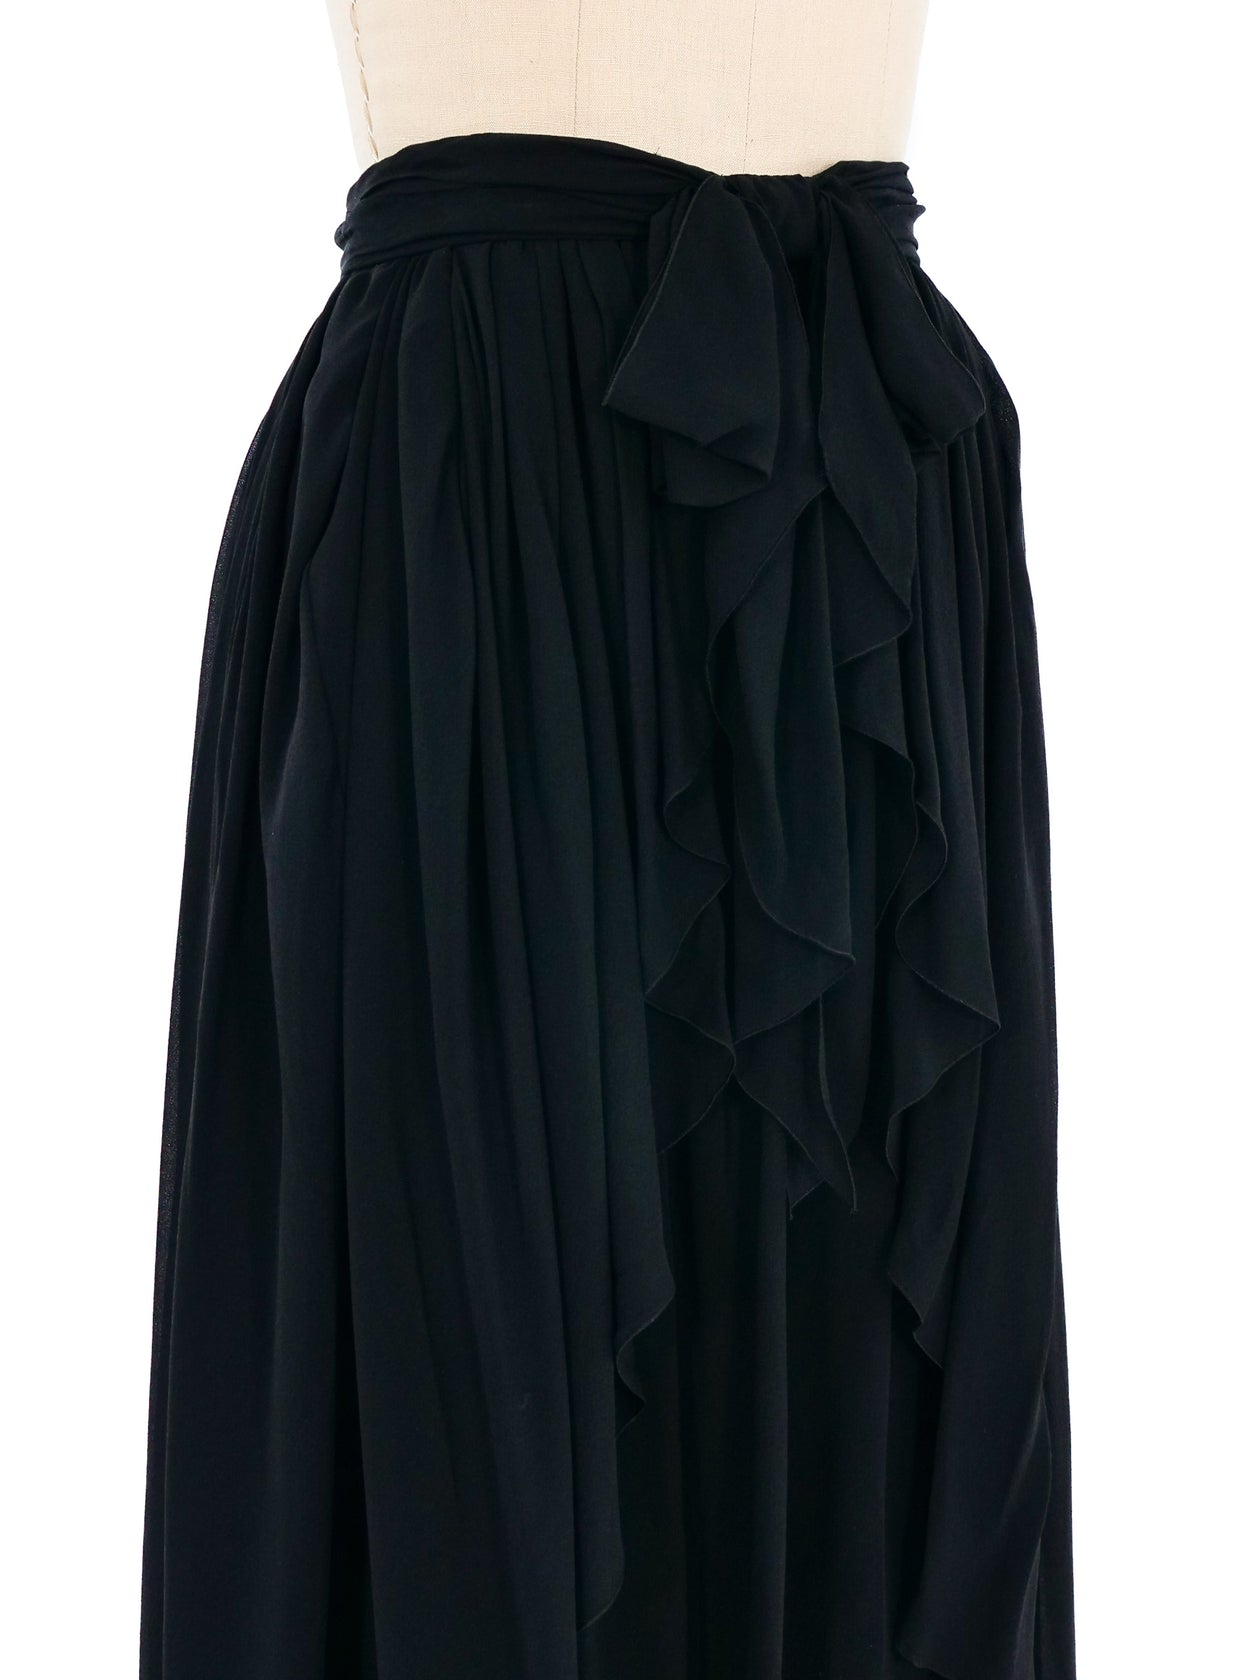 Chanel Ruffle Silk Chiffon Skirt